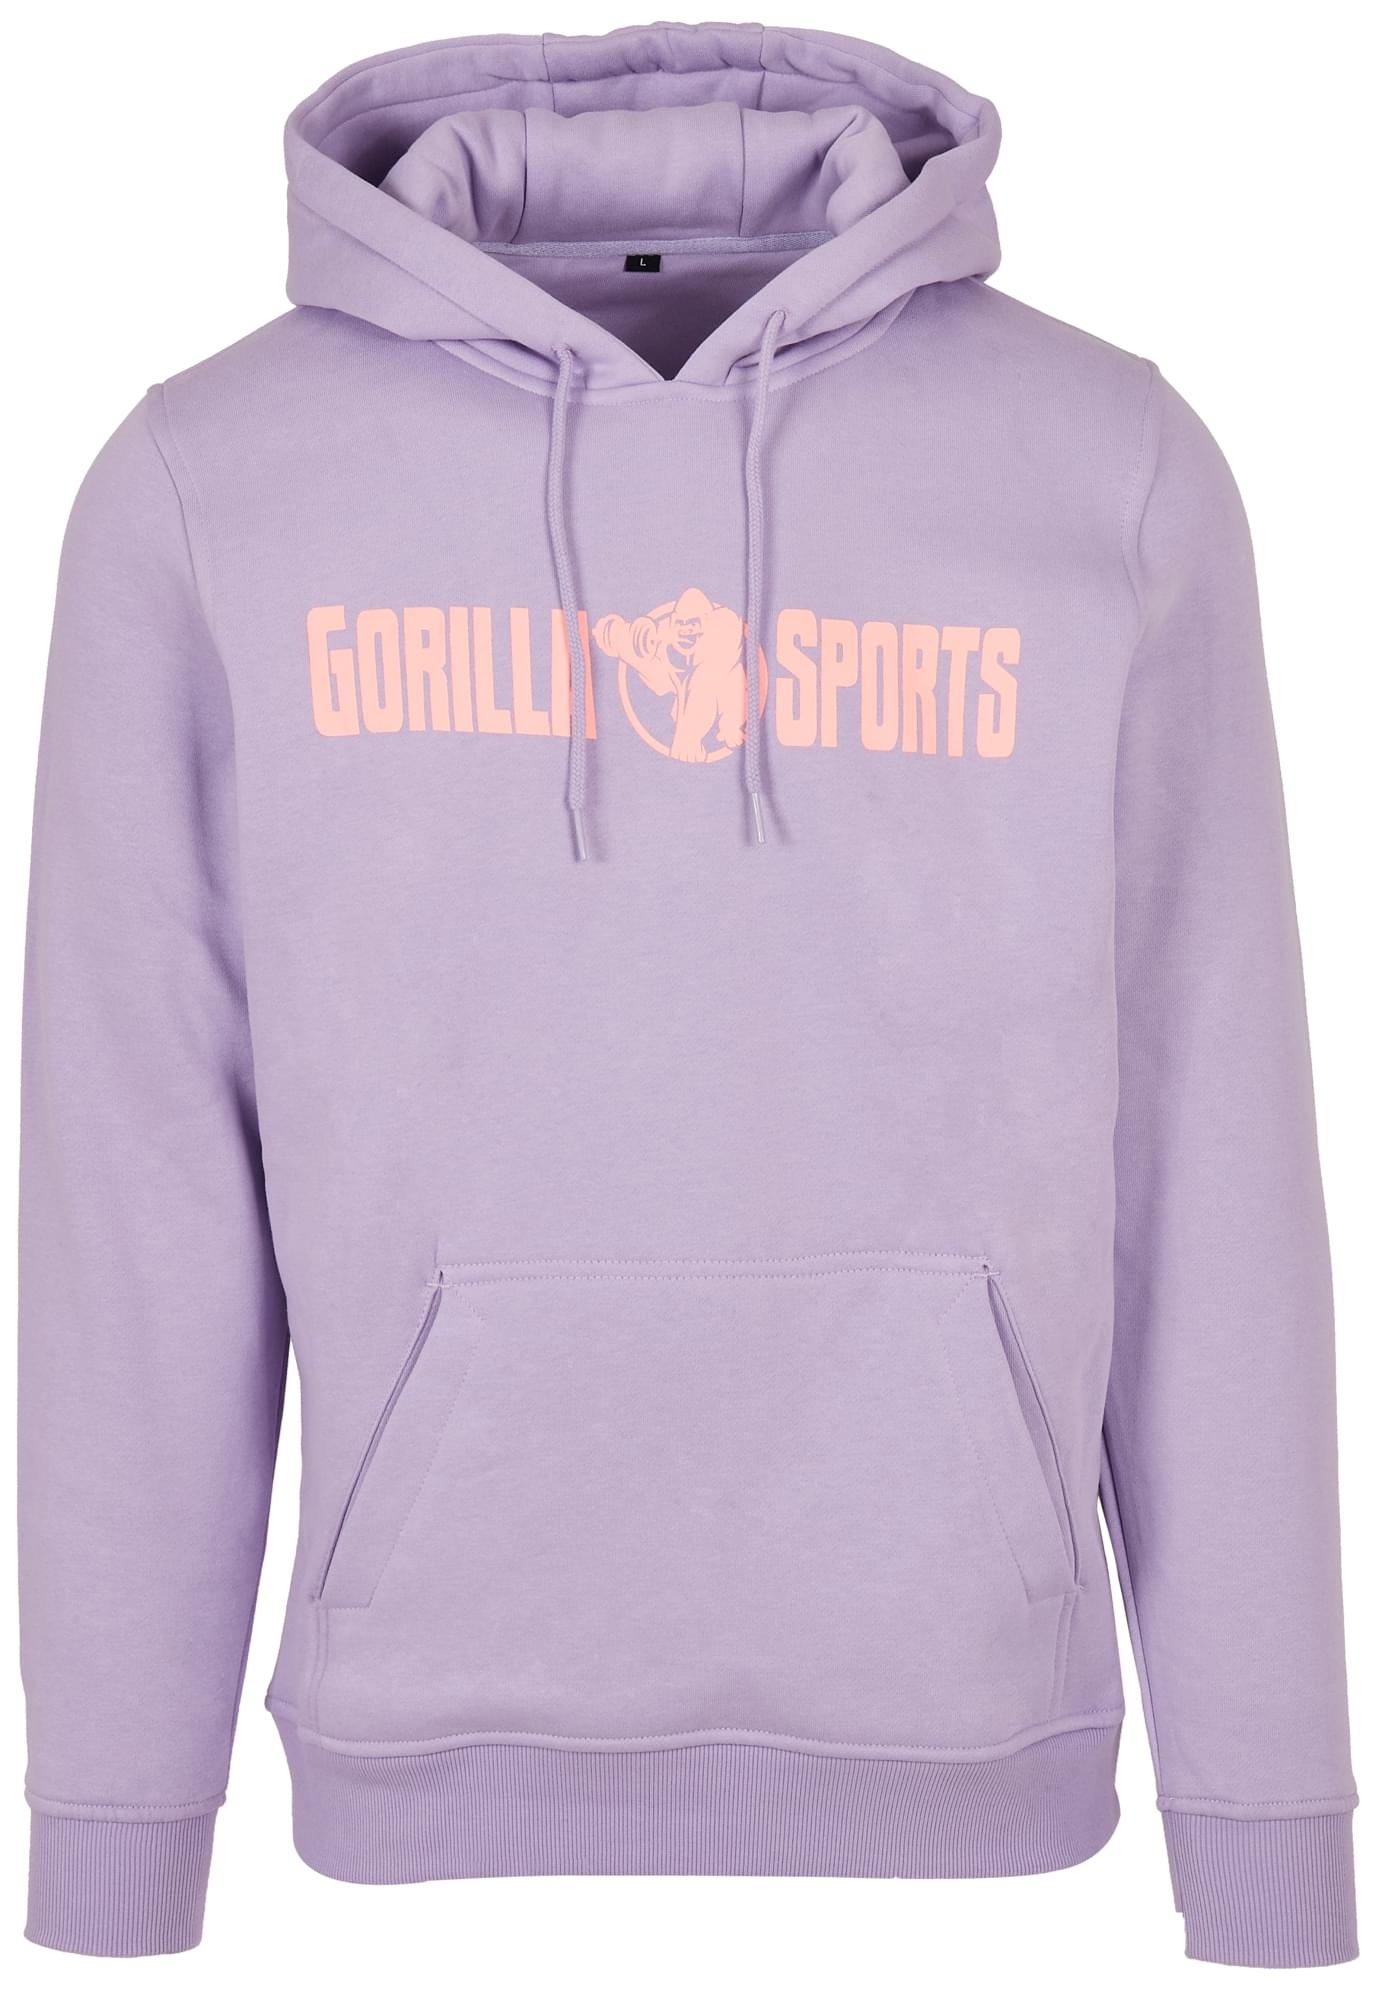 Sweatshirt Ã capuche mixte - Taille L - Coloris violet/corail